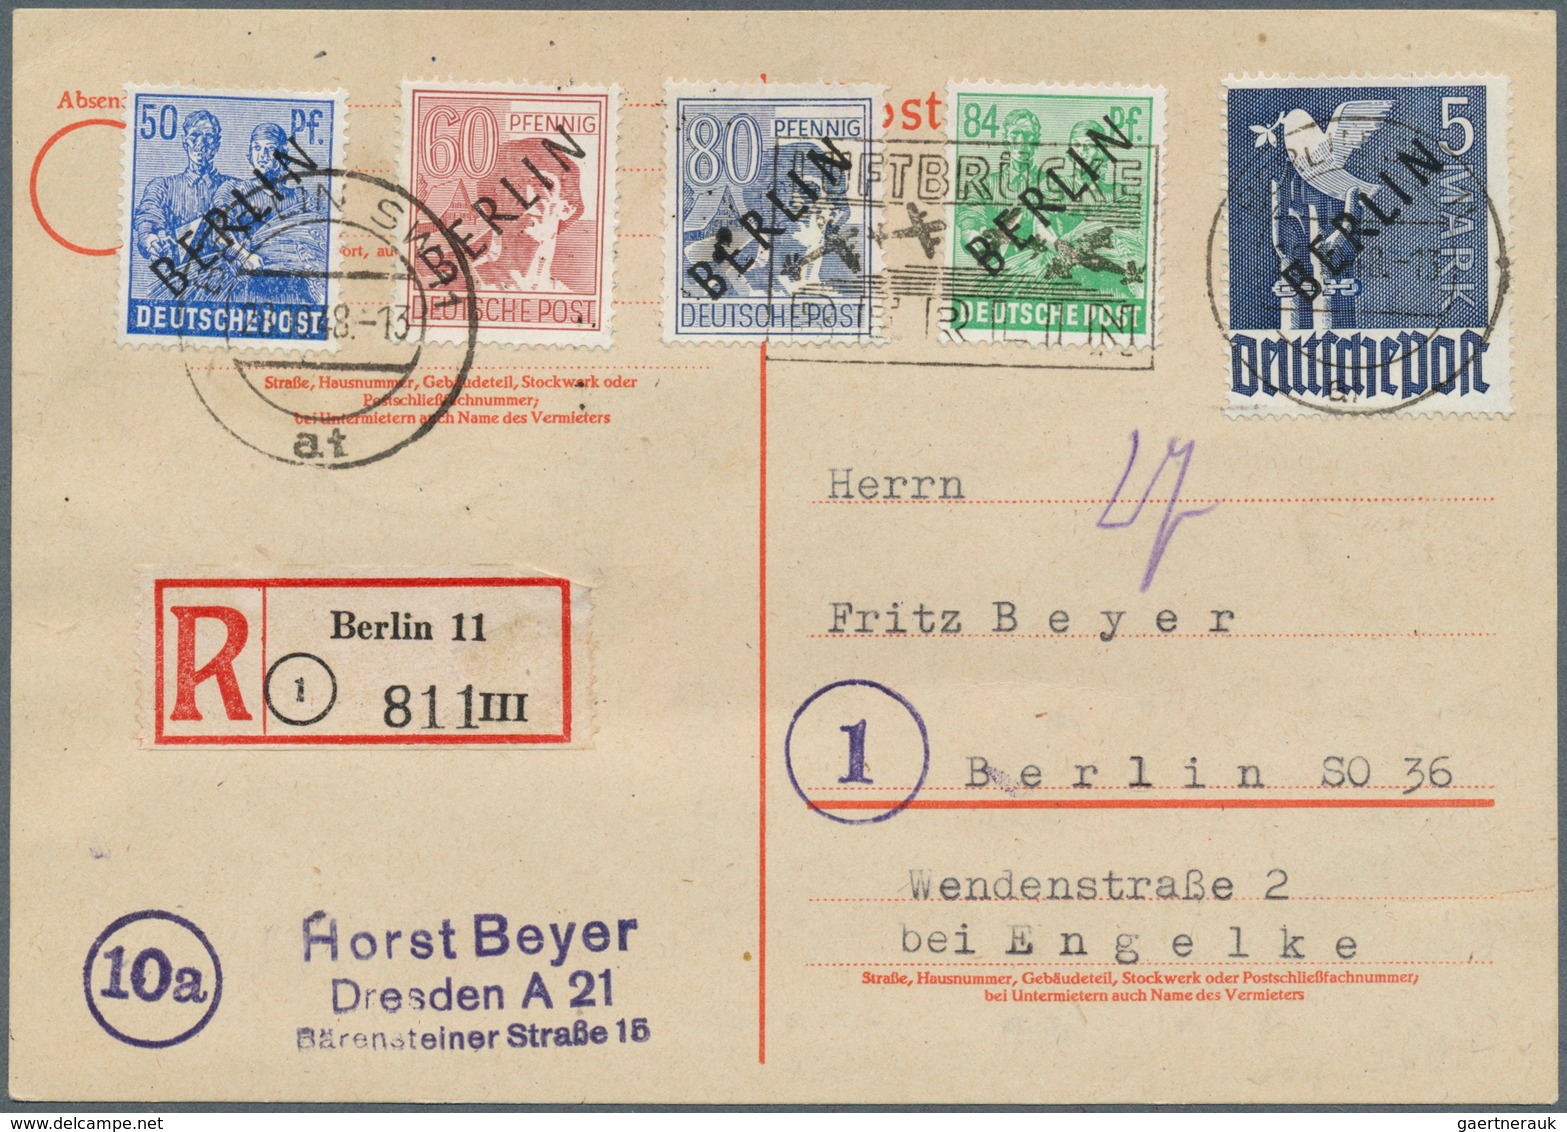 Berlin: 1948, Schwarzaufdruck 2 Pfg. bis 5 Mark, kompletter Satz auf vier philatelistischen Orts-R-K